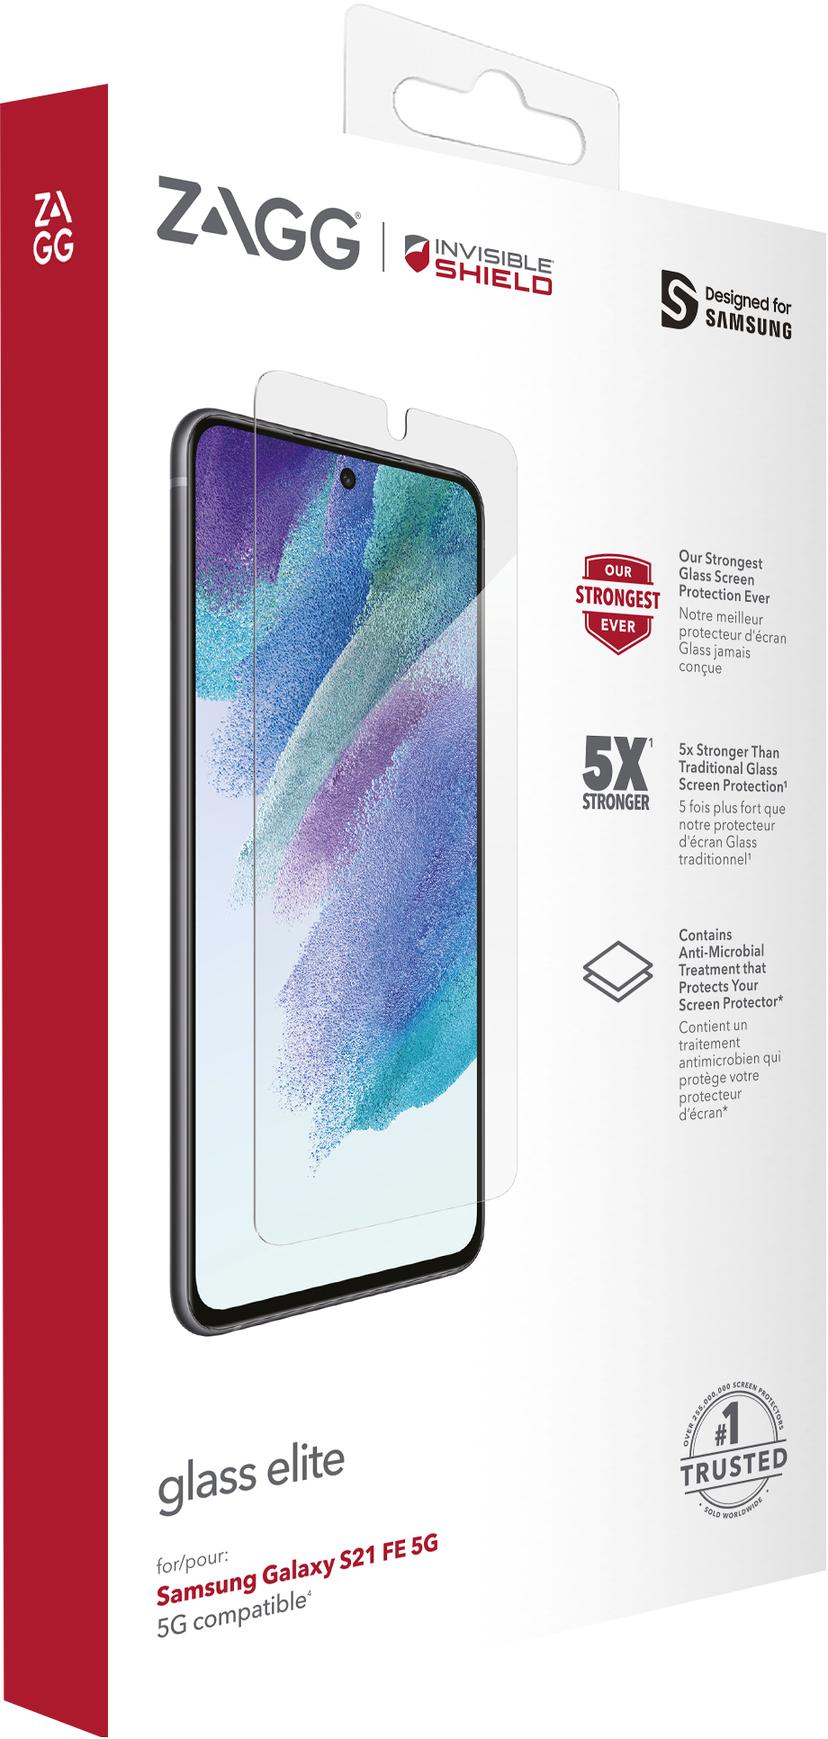 Invisible Shield InvisibleShield Glass Elite+ Samsung Galaxy S21 FE